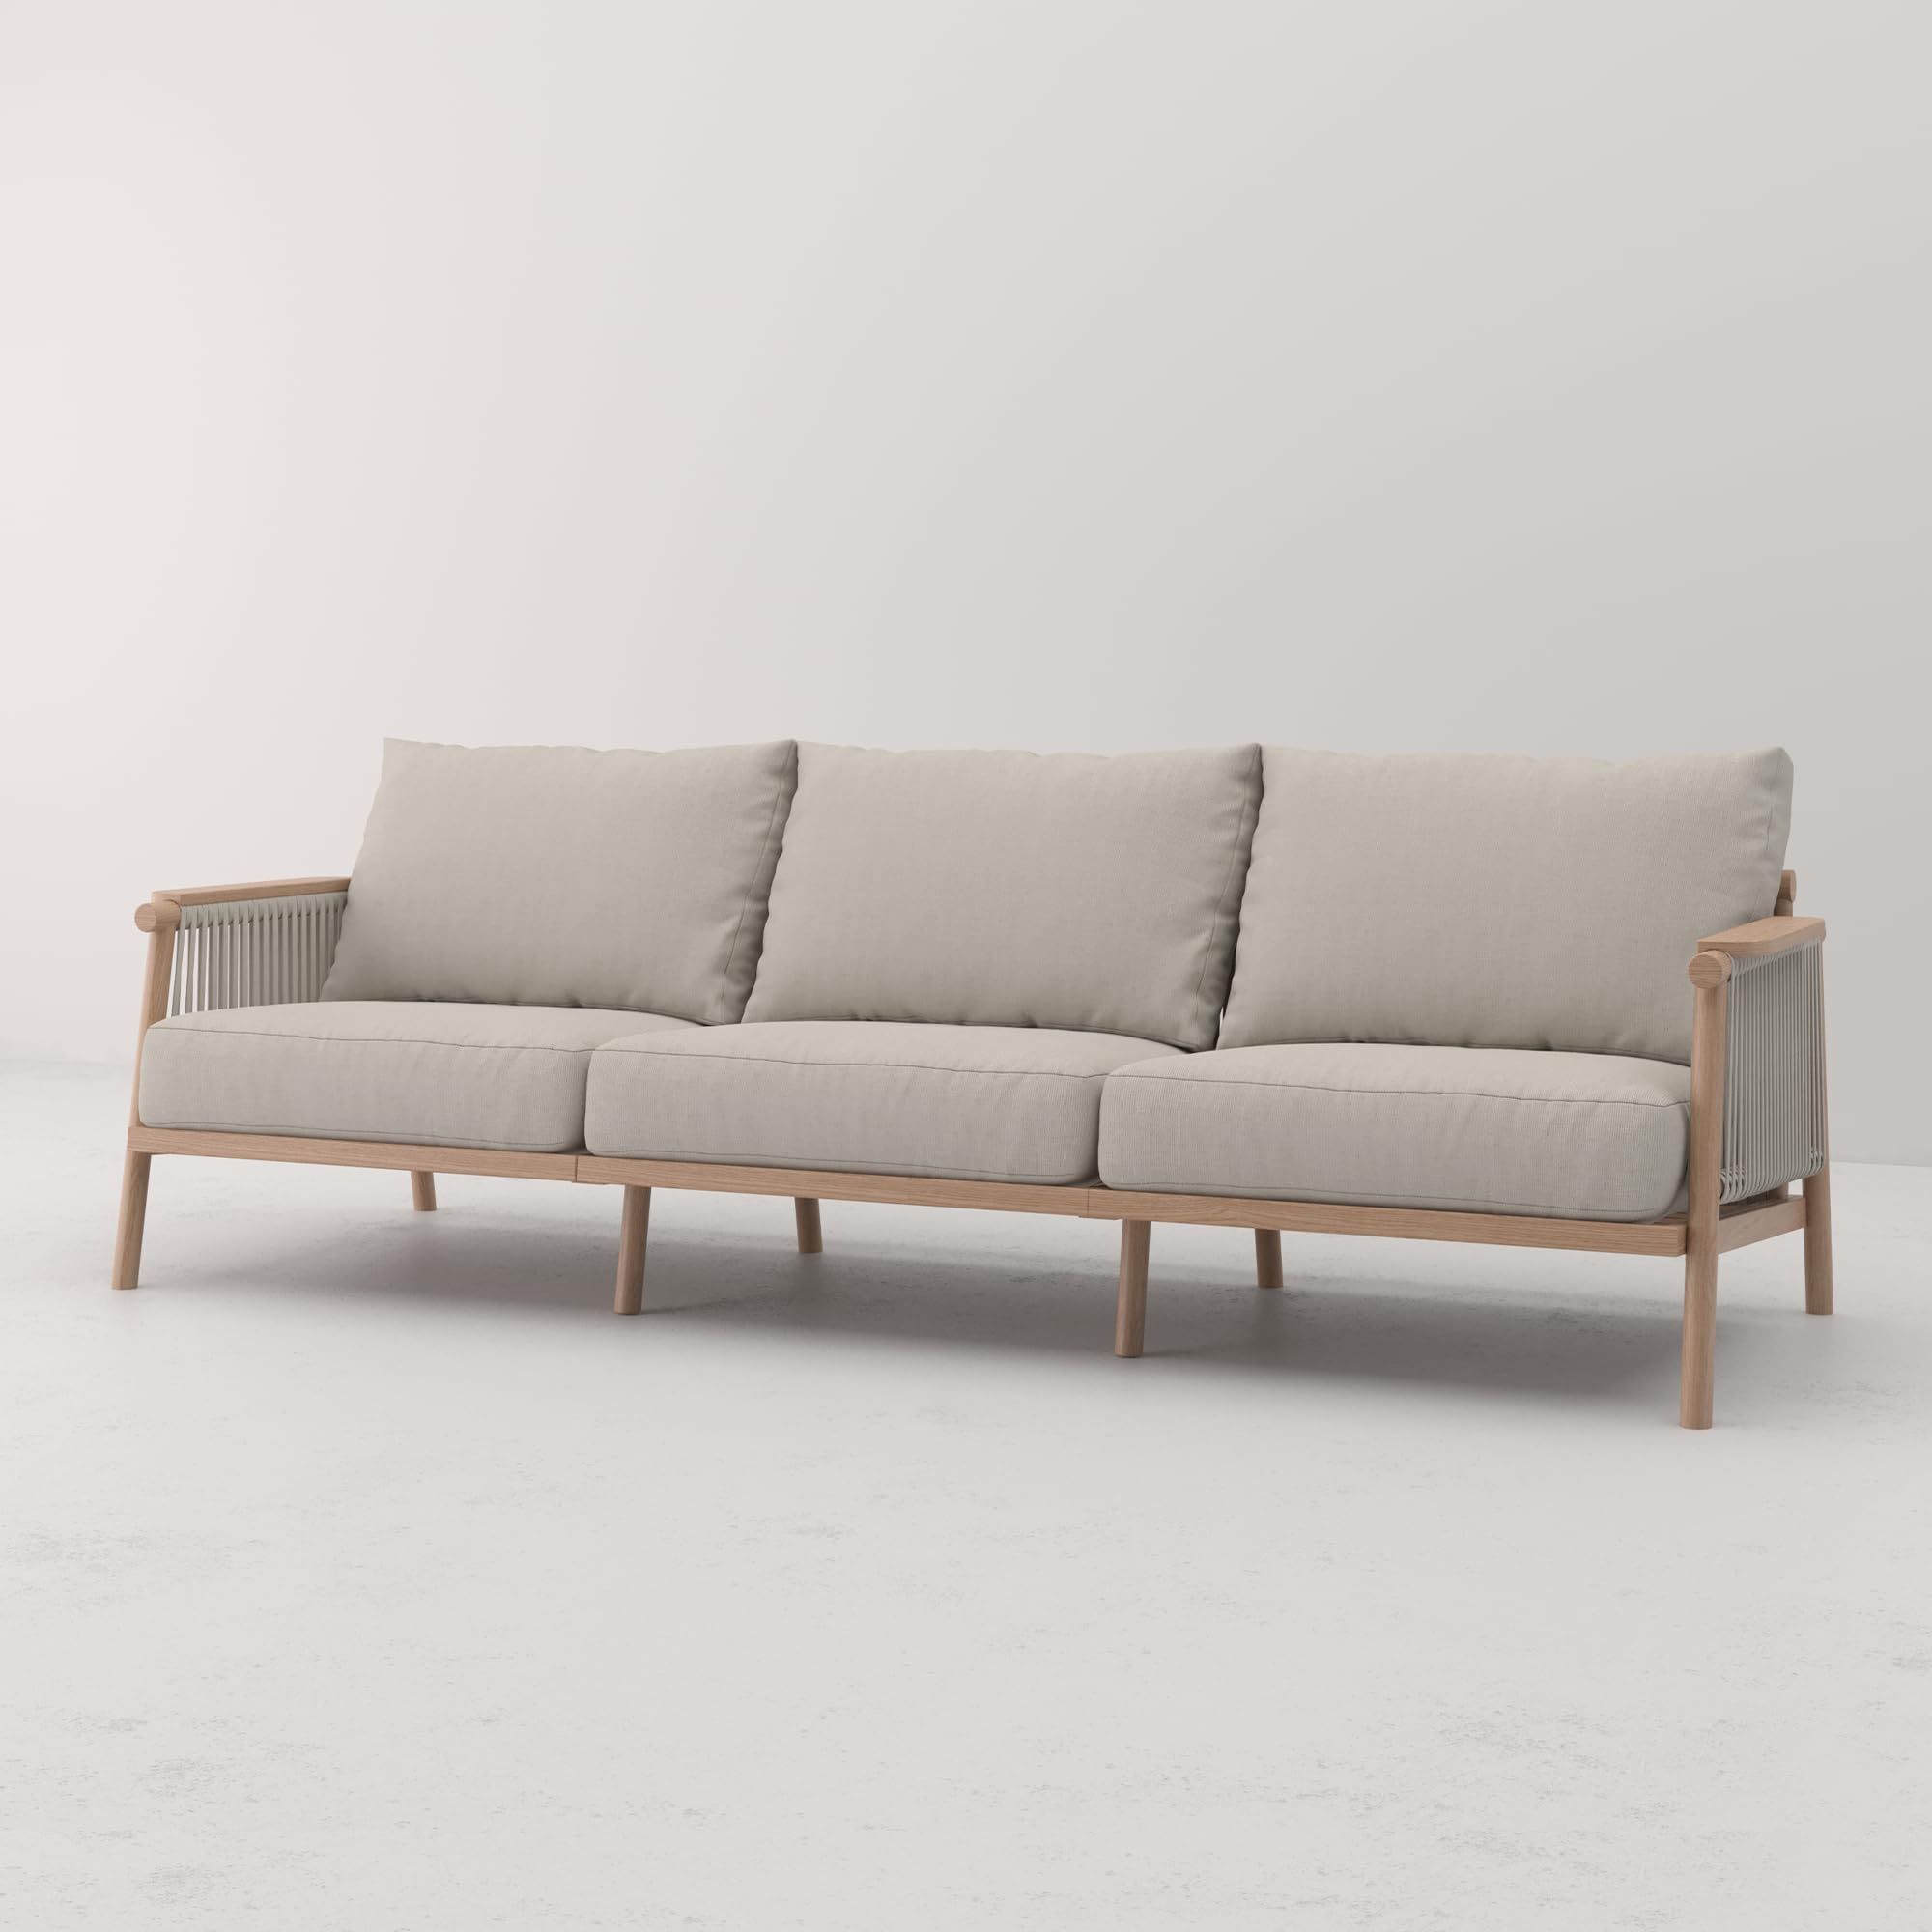 Modern aluminum outdoor sofa | Amazon (US)